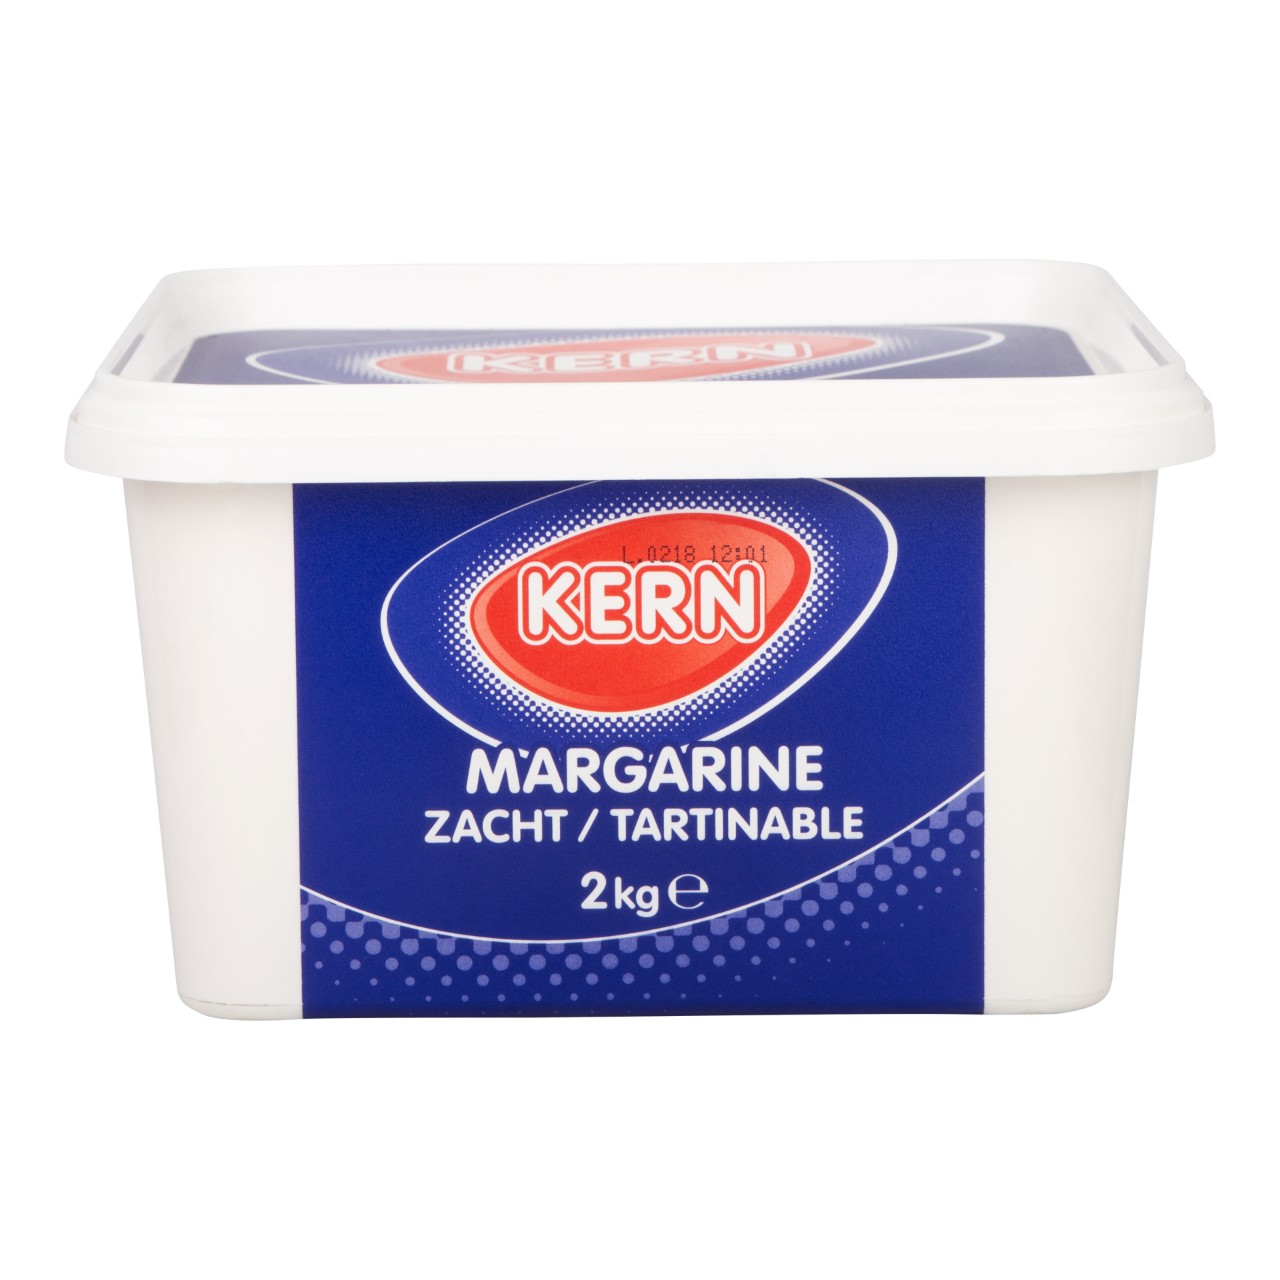 Zachte margarine